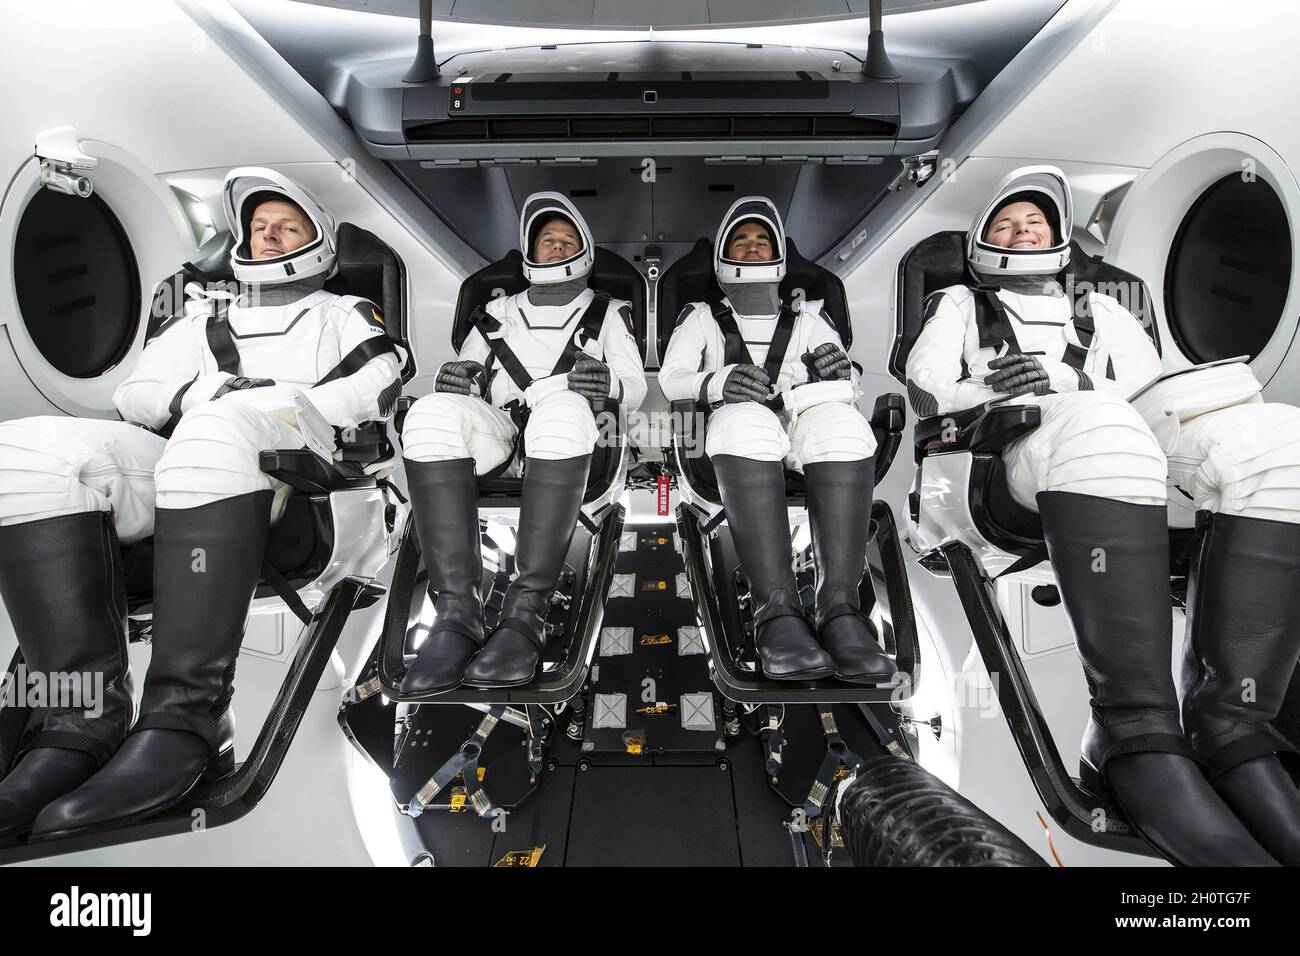 Hawthorne, Stati Uniti. 14 Ott 2021. Gli astronauti di SpaceX Crew-3 posano per un ritratto nelle loro tute durante una sessione di allenamento all'interno della navicella spaziale SpaceX Crew Dragon il 9 ottobre 2021. Da sinistra si trovano l'astronauta Matthias Maurer dell'ESA (Agenzia spaziale europea) e gli astronauti della NASA Raja Chari, Thomas Marshburn e Kayla Barron. Chari è il comandante, Marshburn è il pilota, e Barron e Maurer sono entrambi specialisti della missione. Foto di SpaceX/UPI Credit: UPI/Alamy Live News Foto Stock